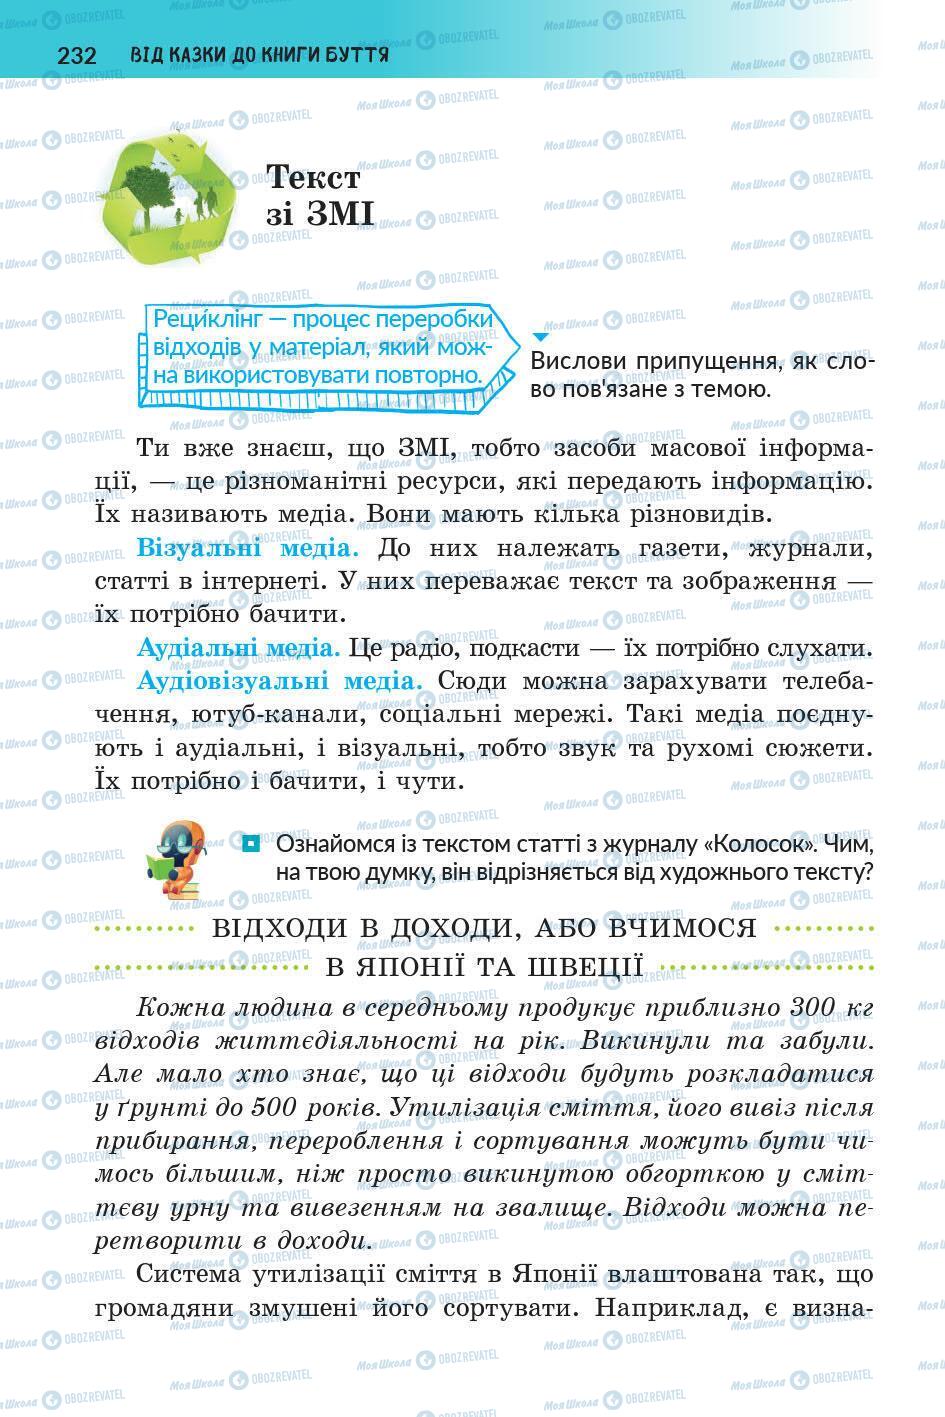 Підручники Українська література 5 клас сторінка 233